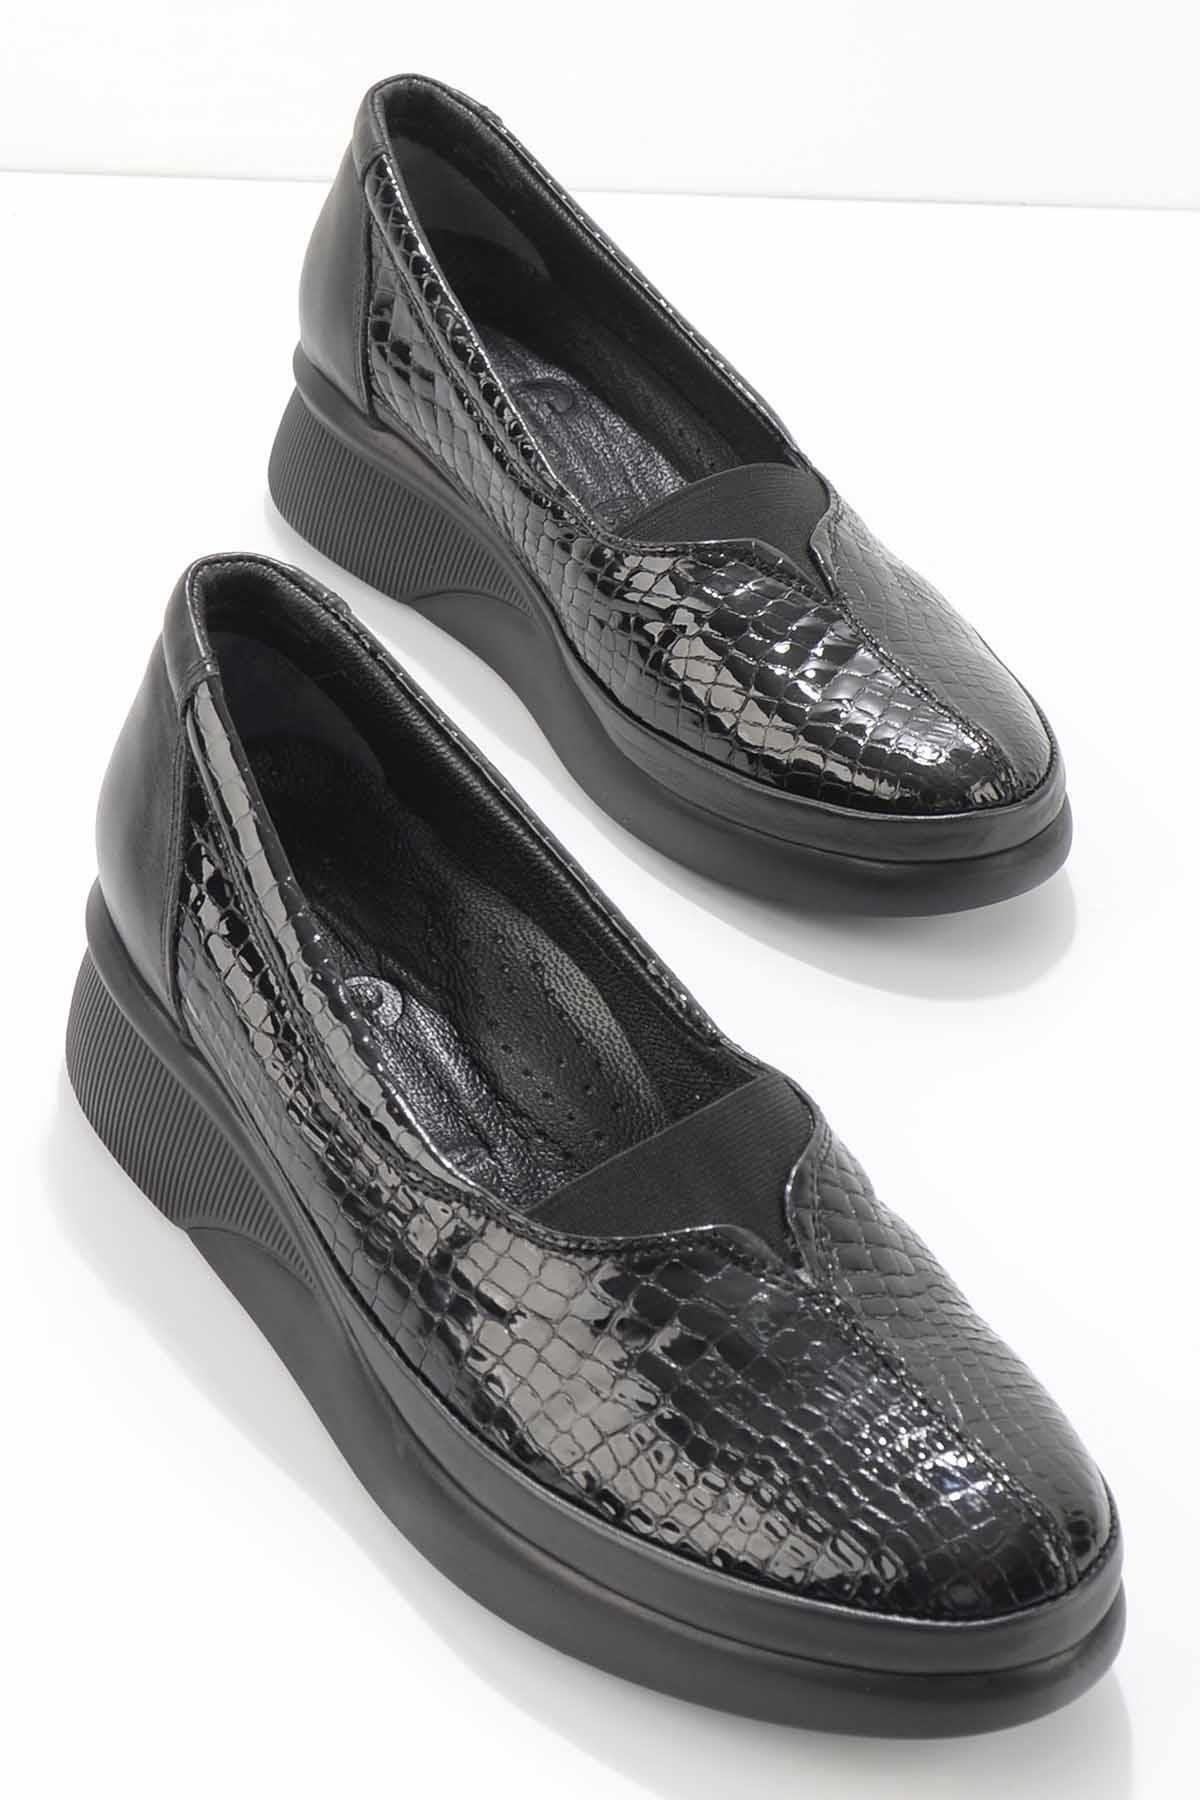 Bambi Siyah Siyah Kroko Hakiki Deri Kadın Dolgu Topuklu Ayakkabı K01115010111